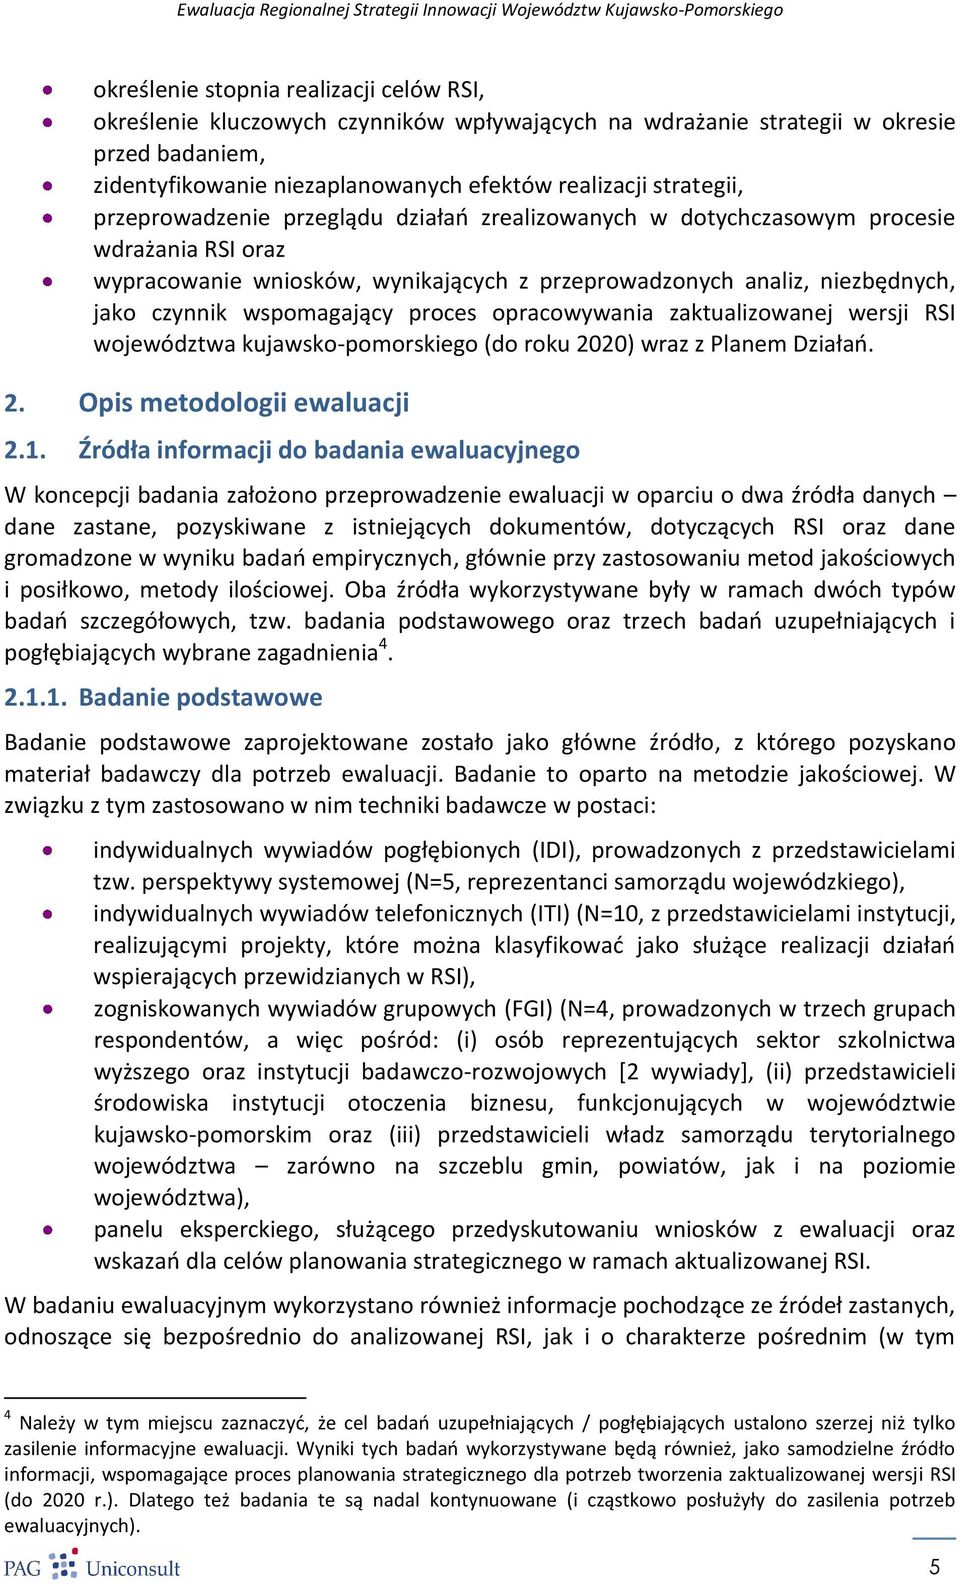 proces opracowywania zaktualizowanej wersji RSI województwa kujawsko-pomorskiego (do roku 2020) wraz z Planem Działao. 2. Opis metodologii ewaluacji 2.1.